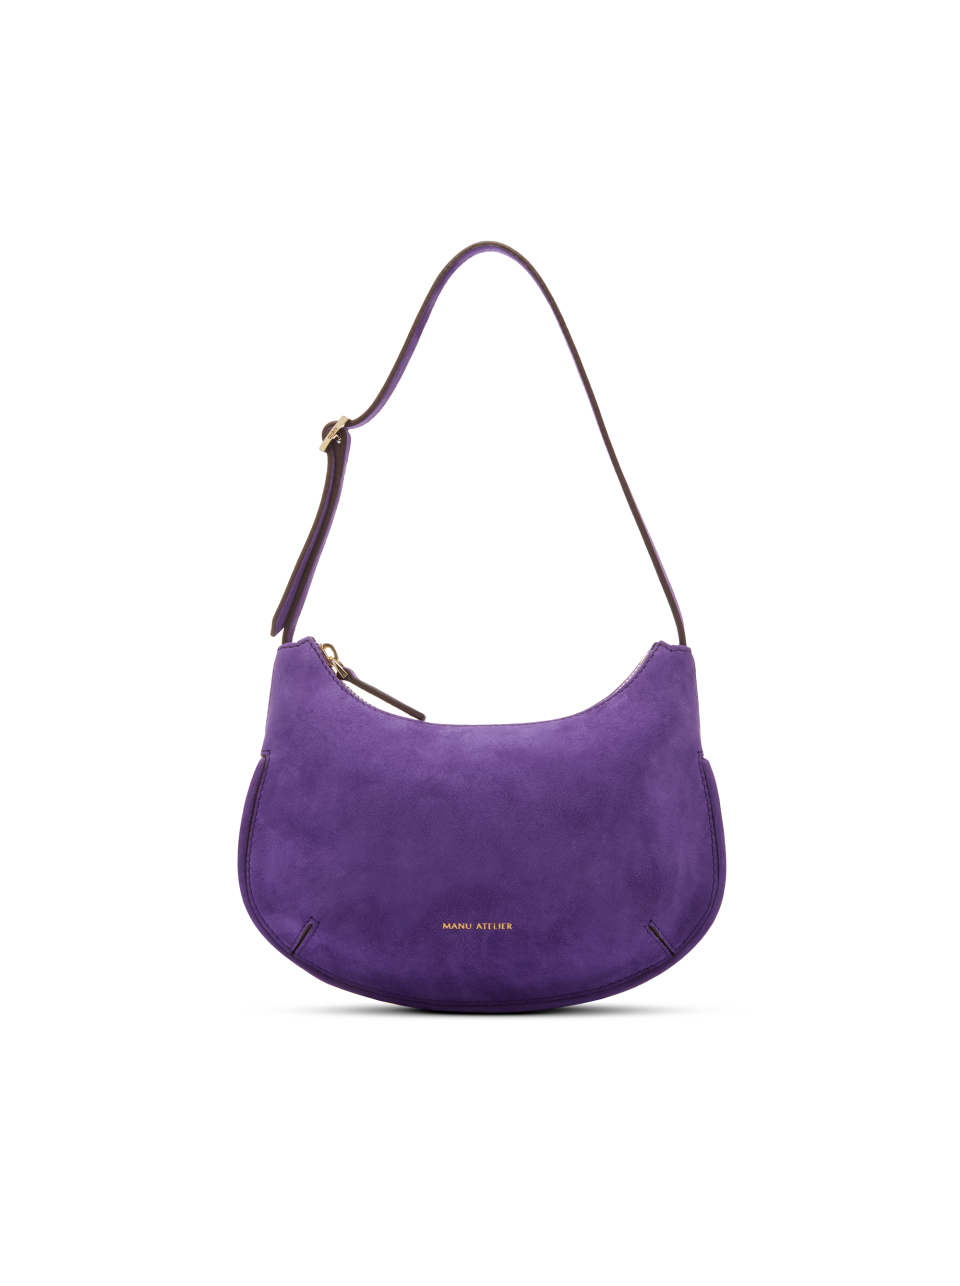 The "Ilda" handbag by Manu Atelier.